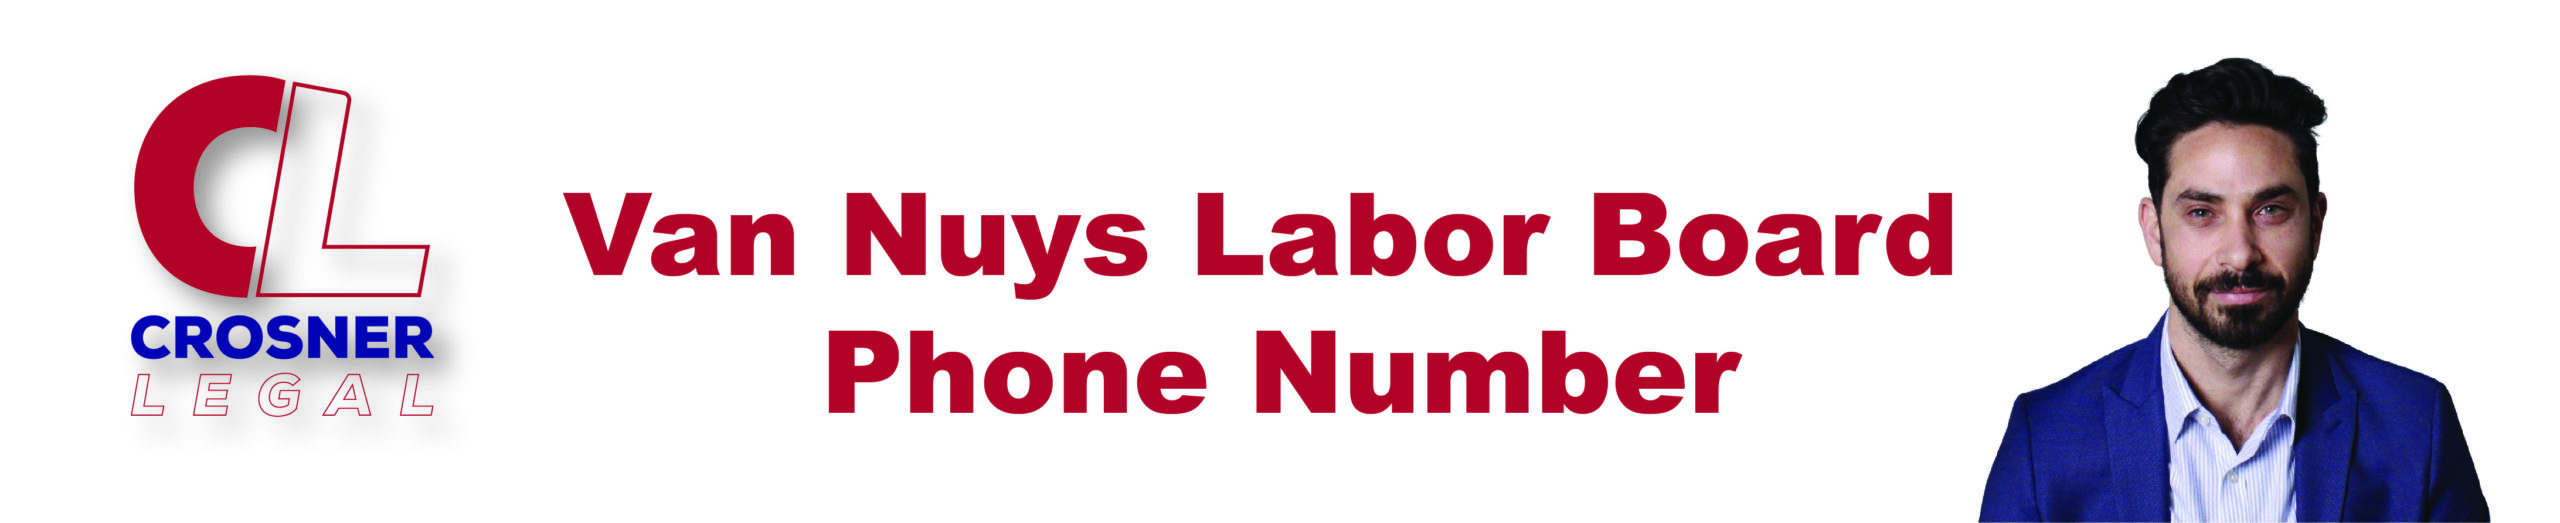 Van Nuys Labor Board Phone Number